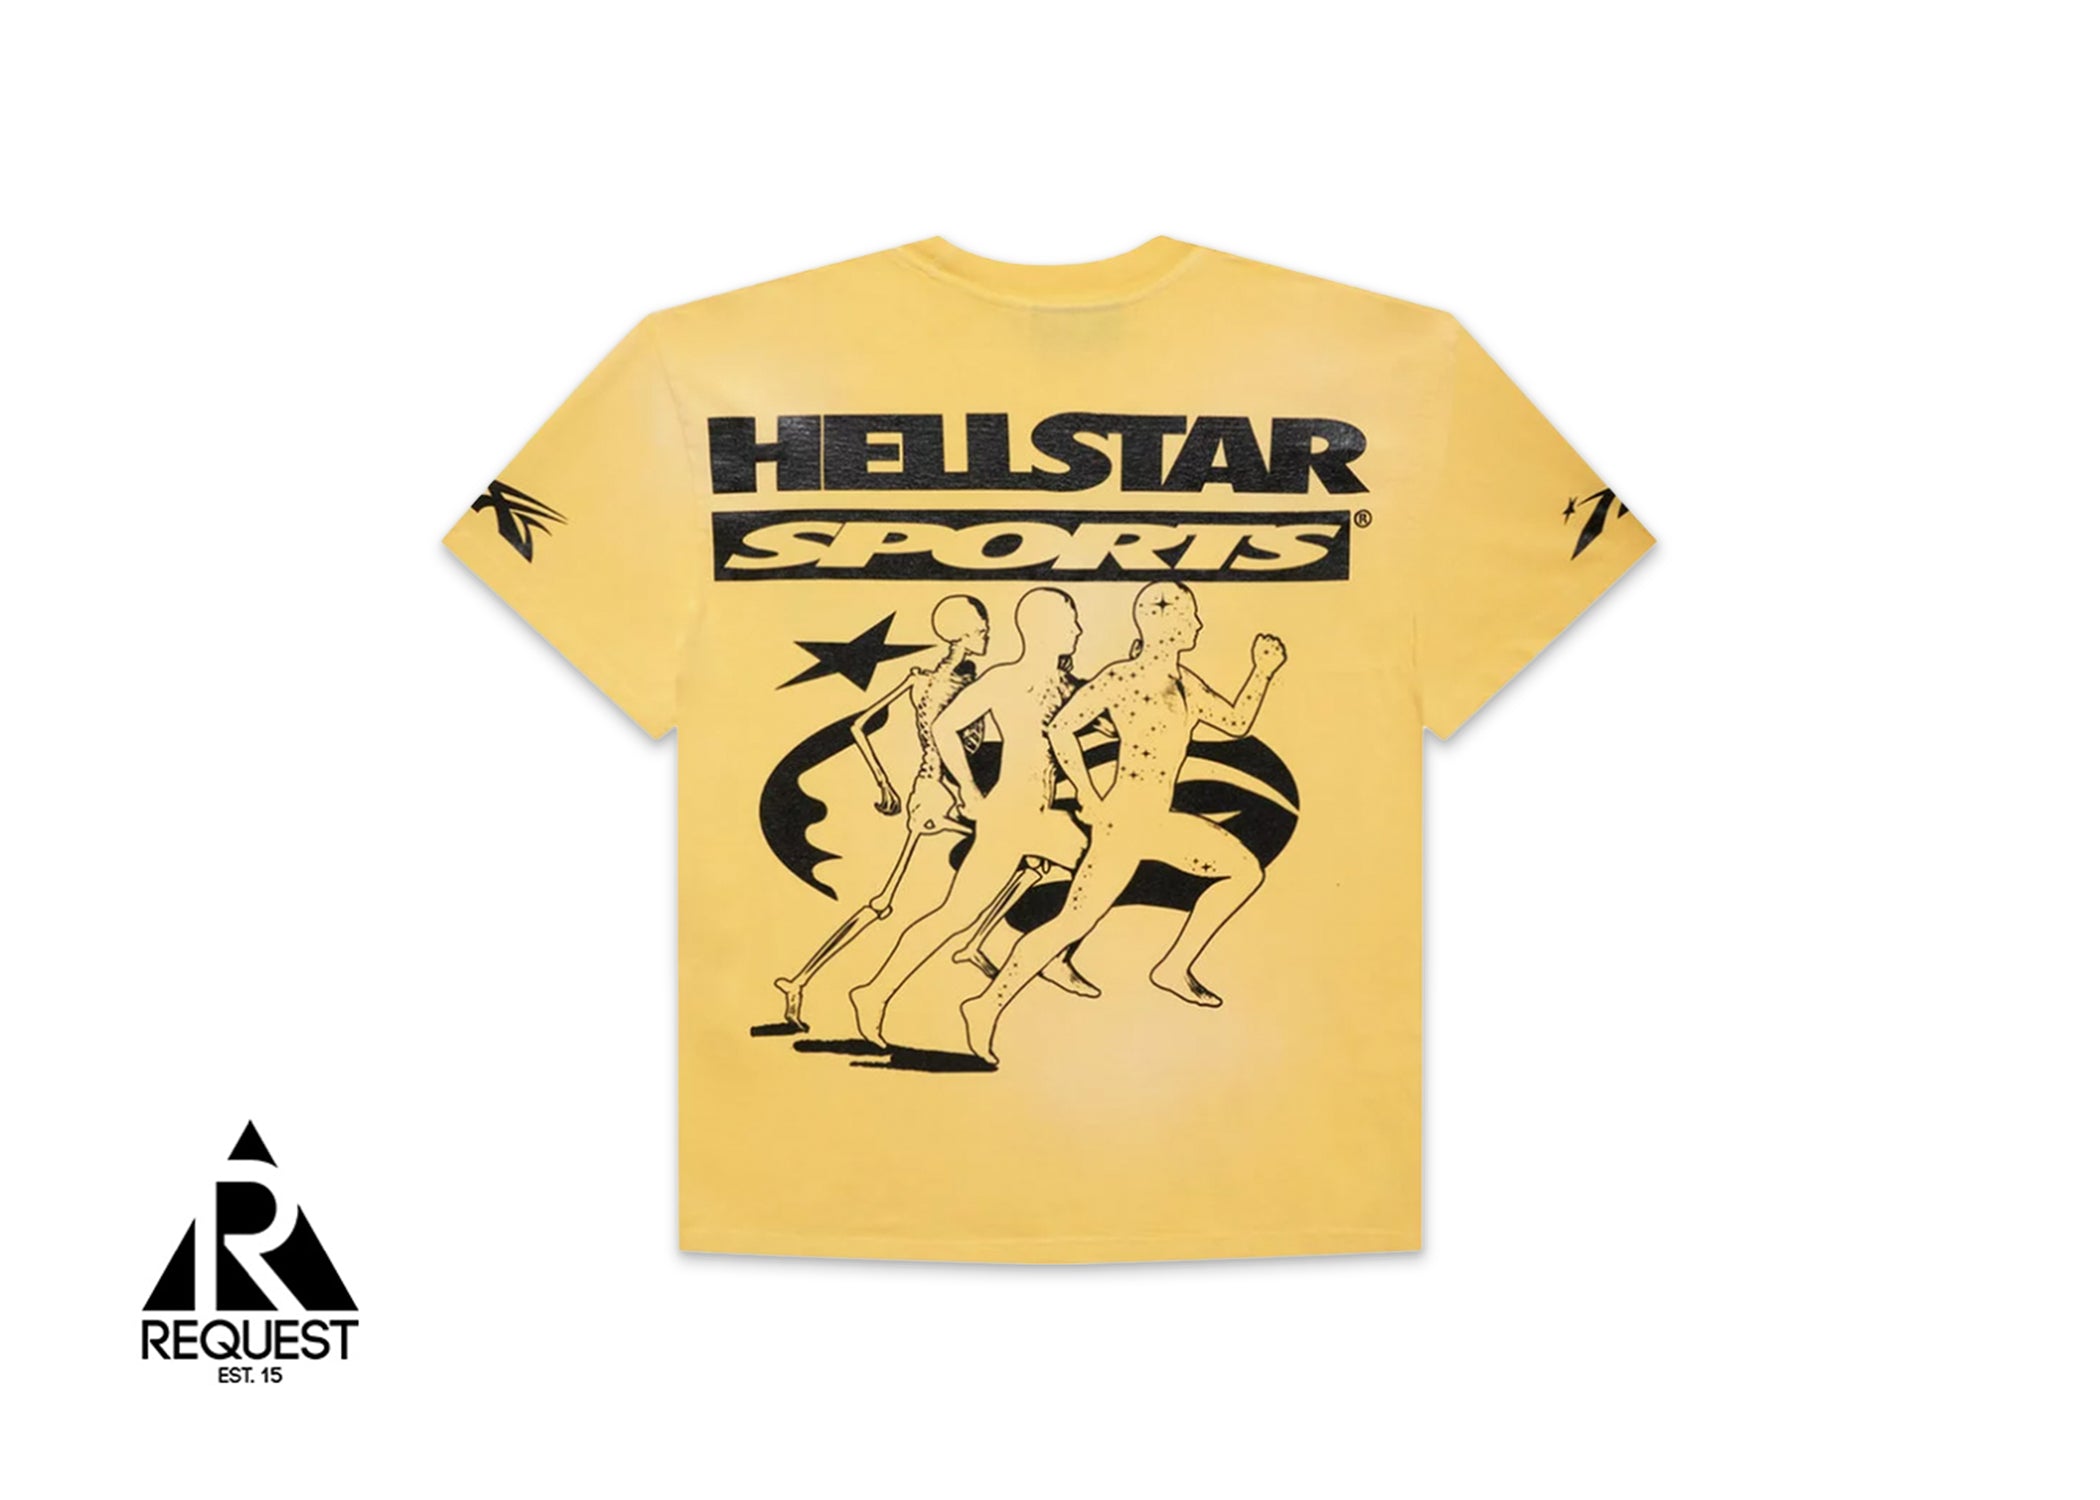 HellStar Marathon Tee "Yellow"